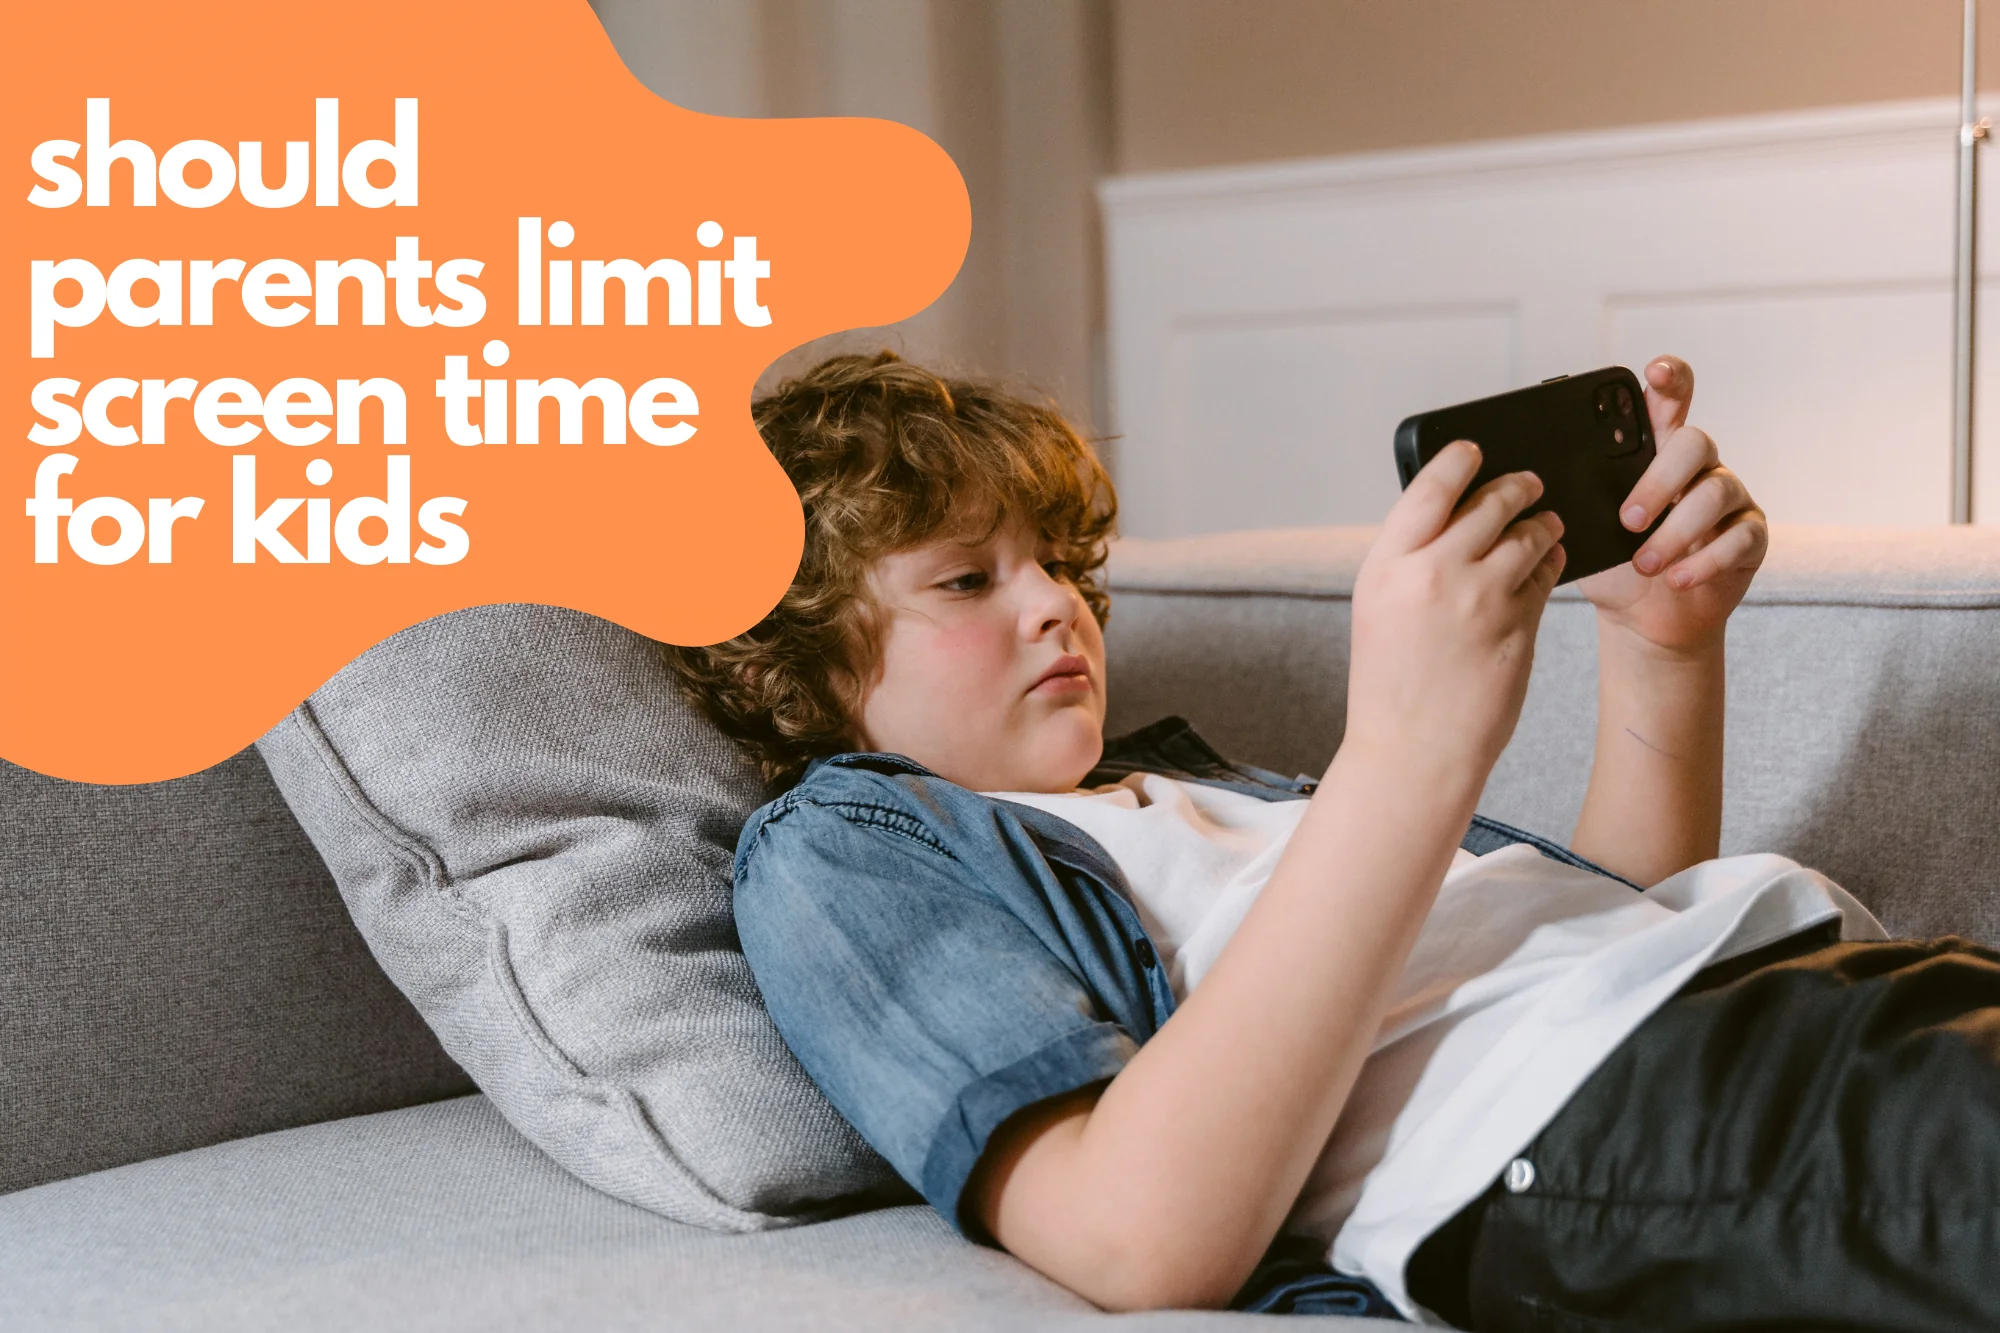 Should Parents Limit Screen Time for Kids: An Argumentative Essay